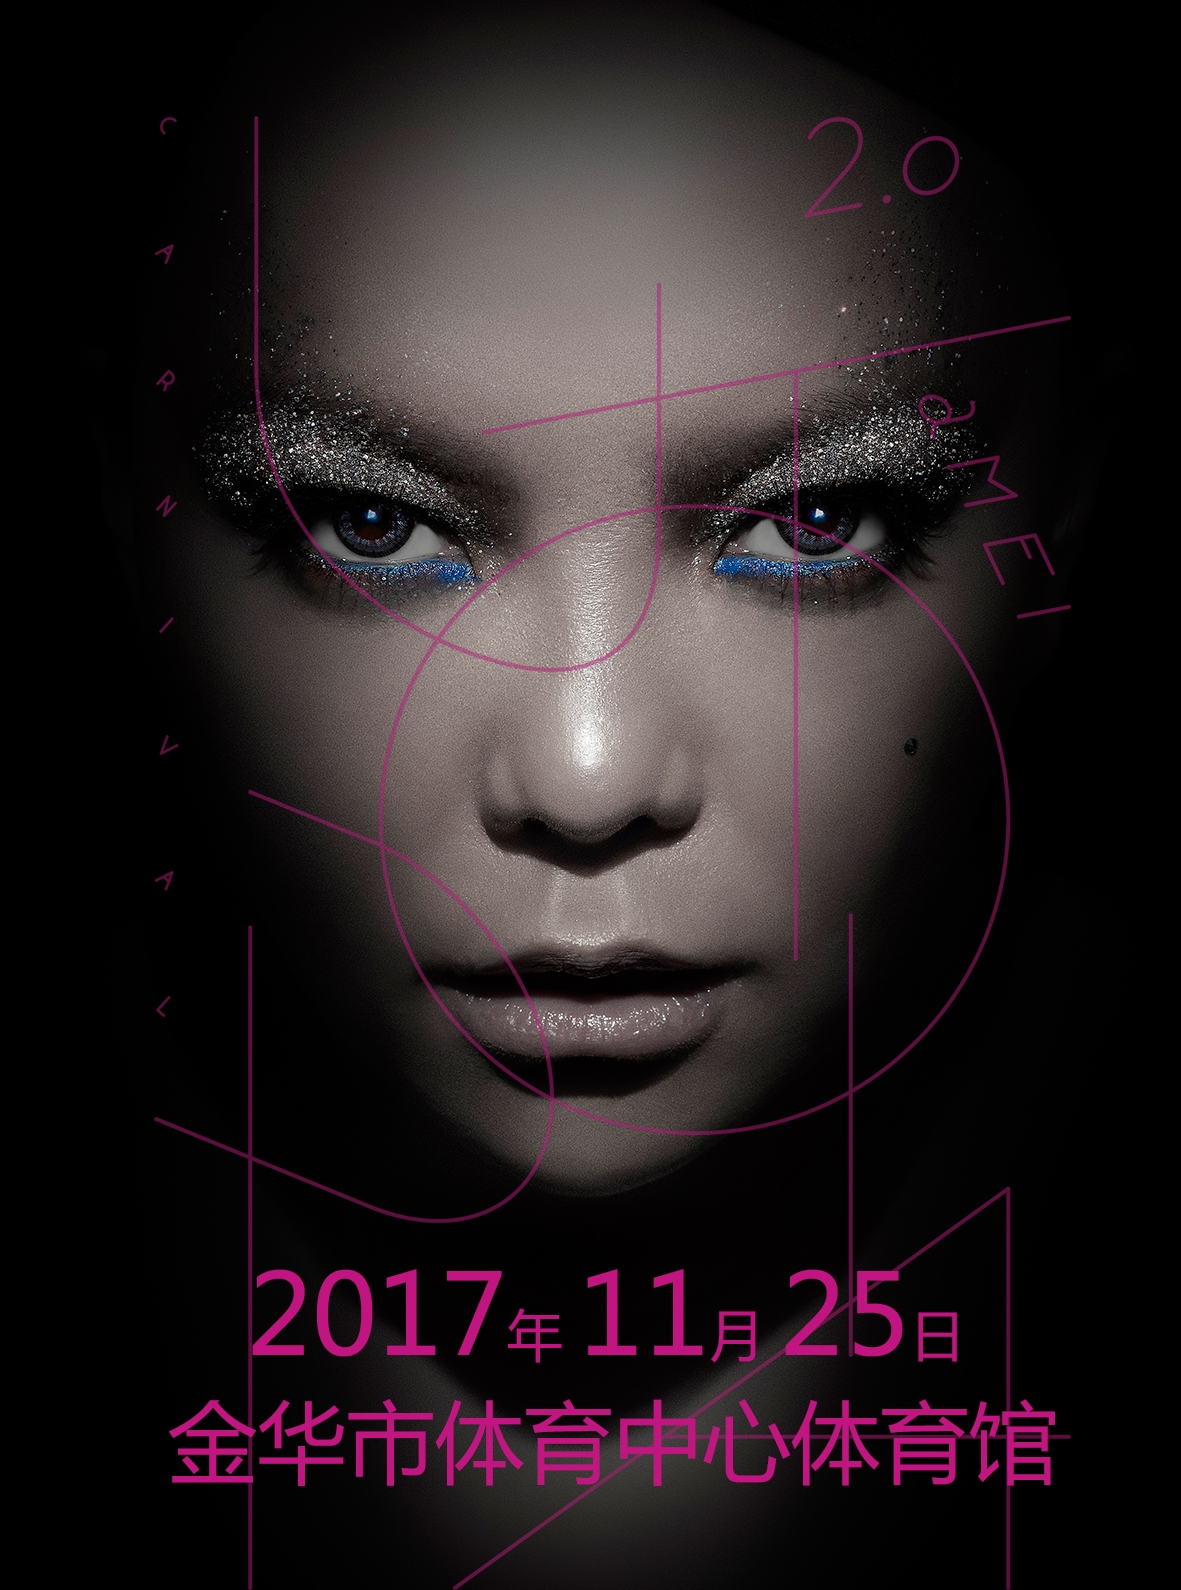 张惠妹-乌托邦2.0庆典-世界巡回演唱会——金华站